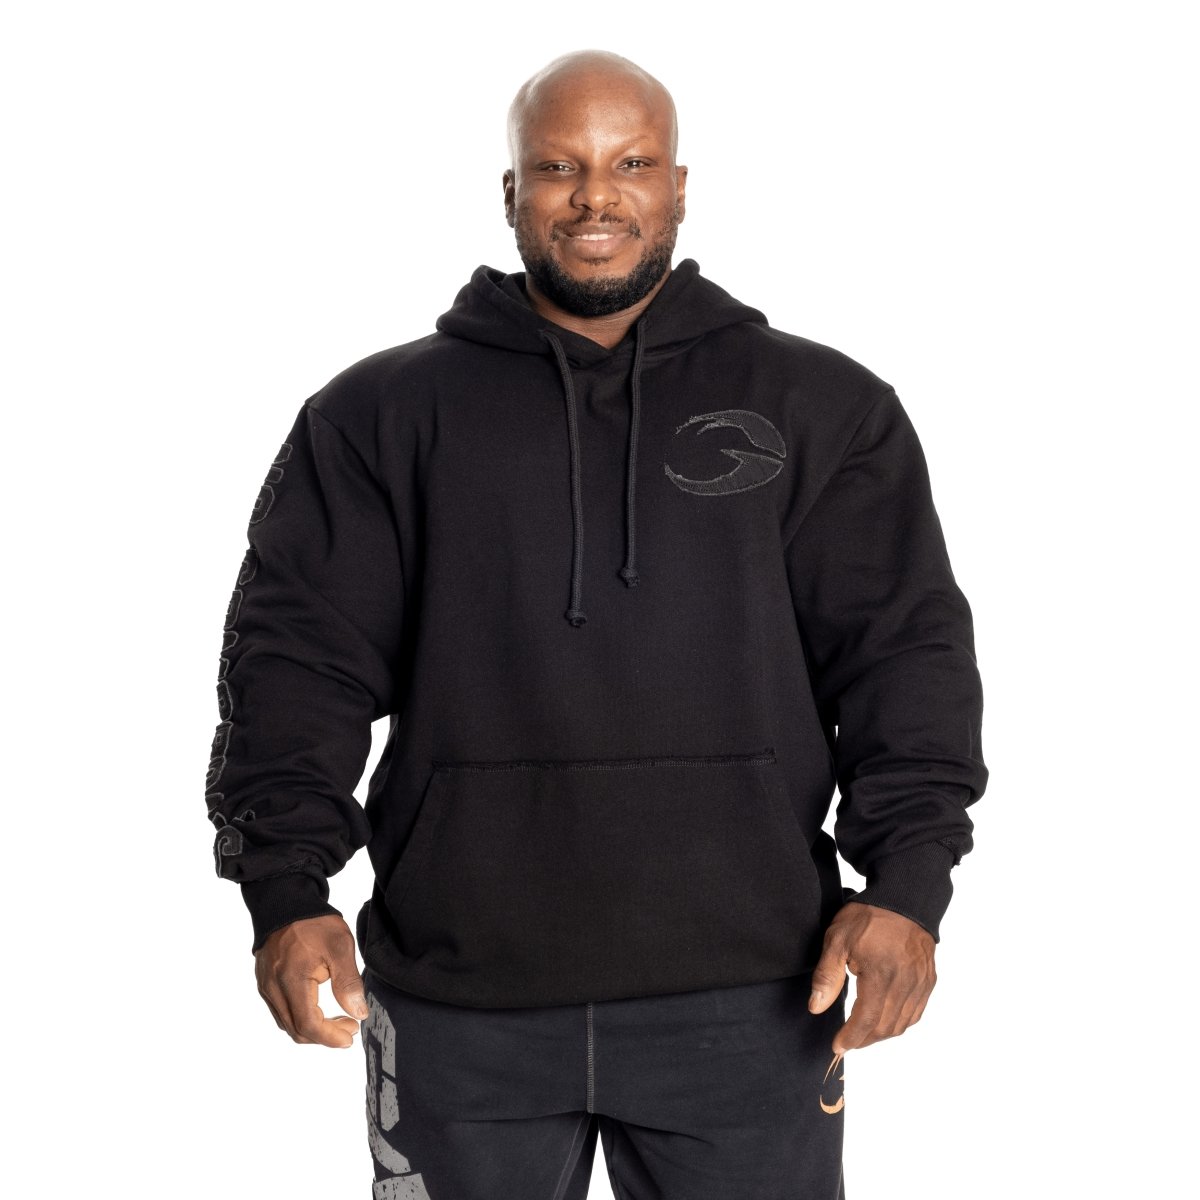 GASP Distressed Hood - Black - Urban Gym Wear